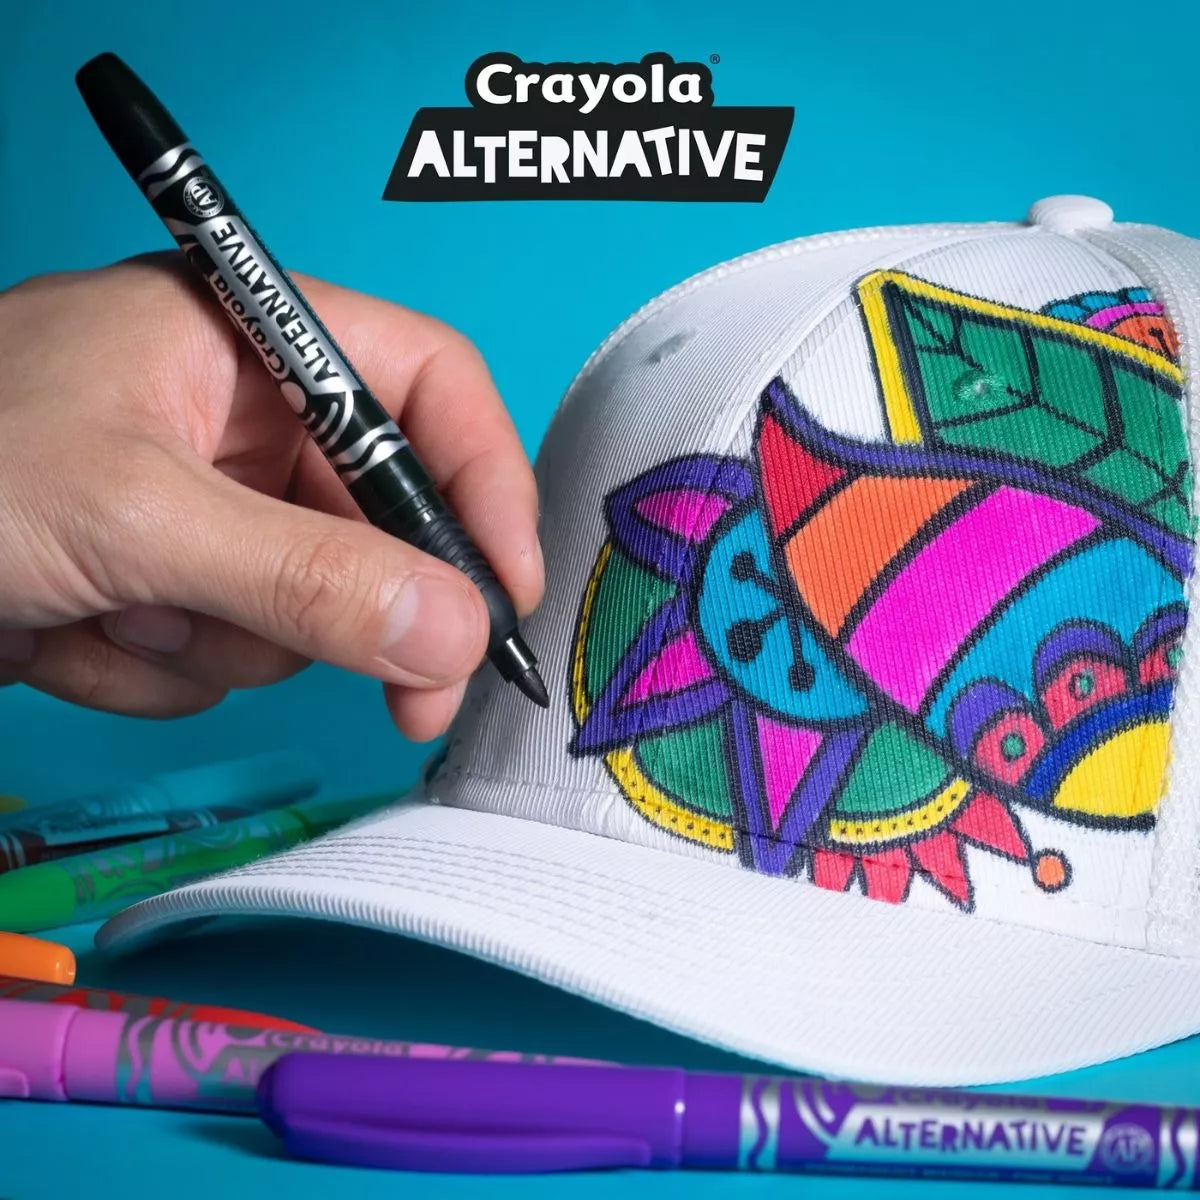 4 Marcadores Permanente Alternative Crayola Punta Fina Color